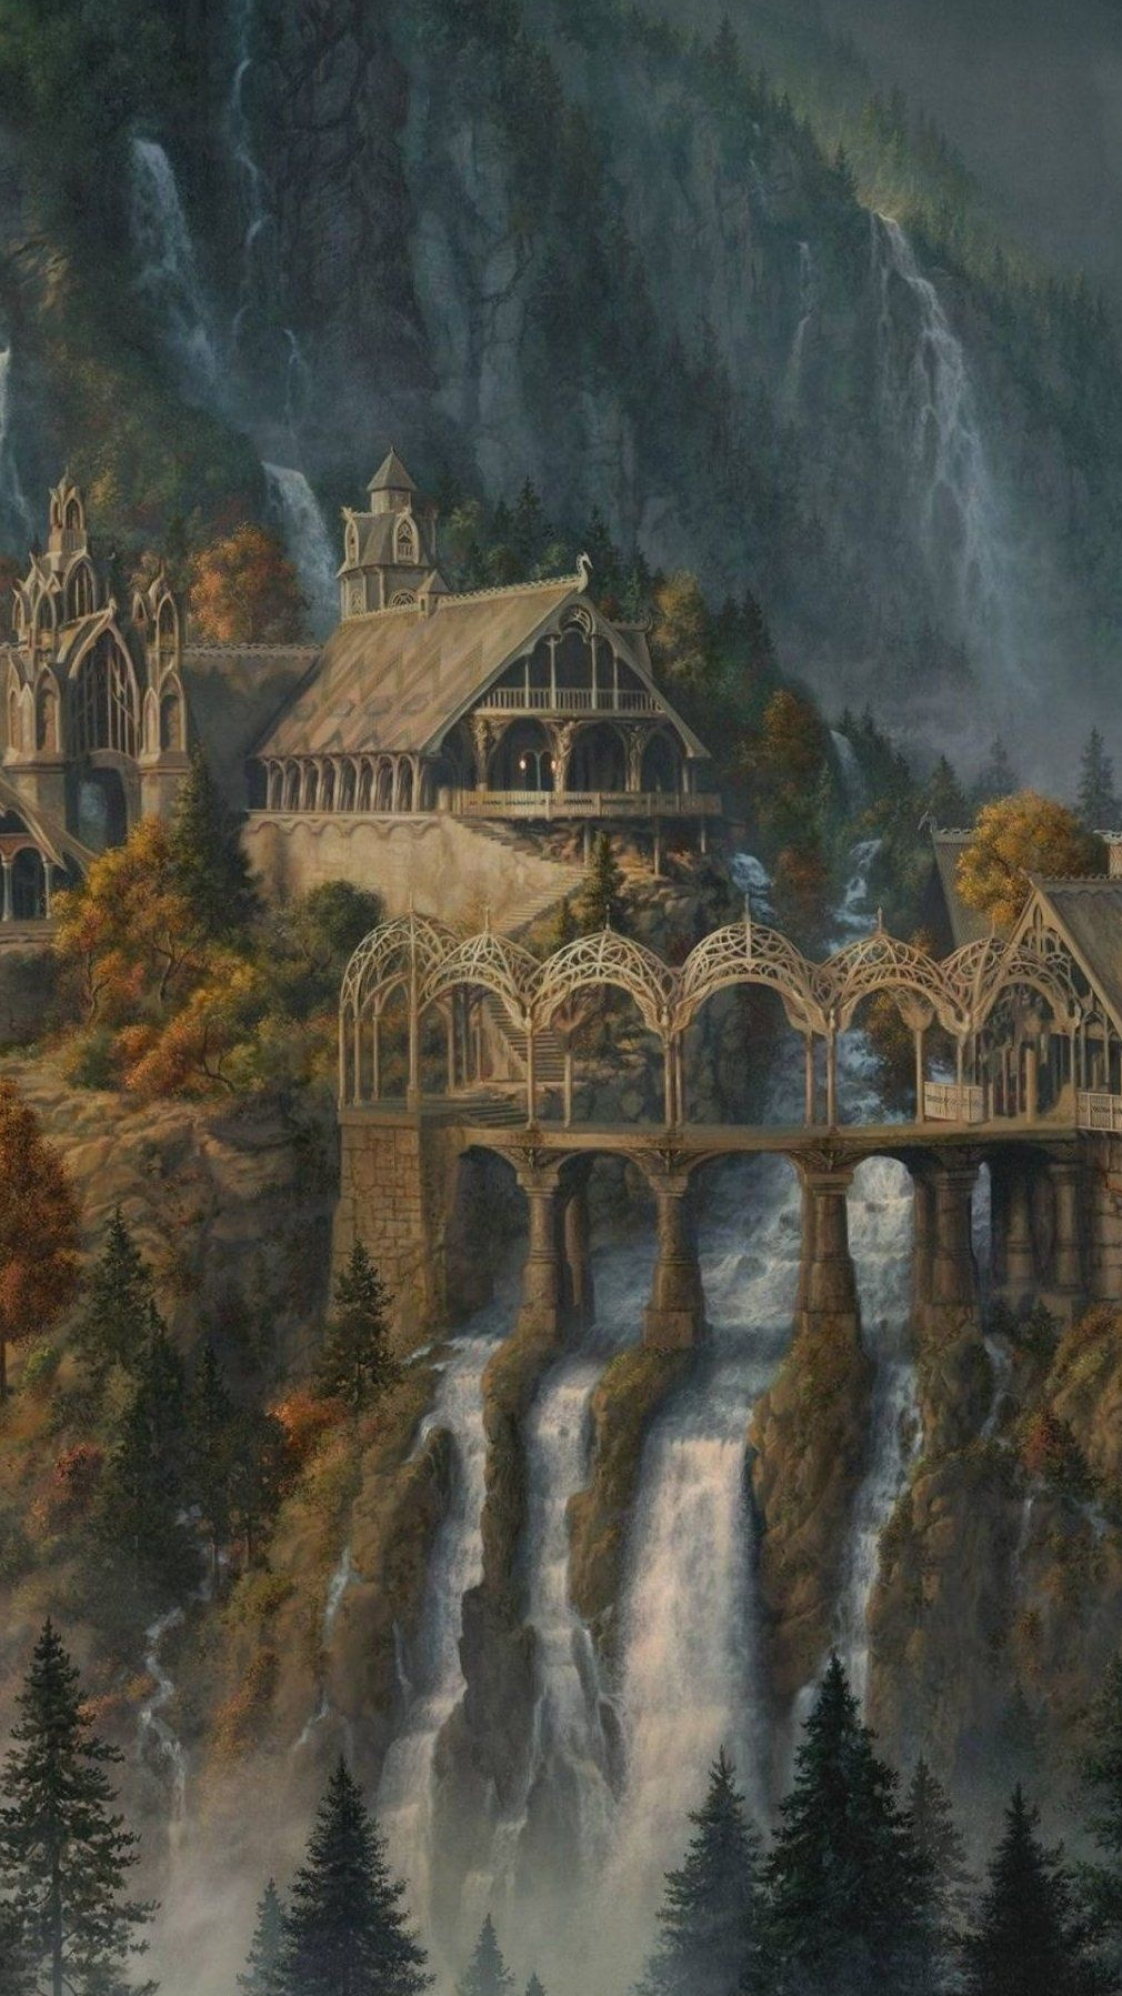 Rivendell, LOTR wallpaper, Fantasy landscape, Middle-earth castle, 1130x2000 HD Handy